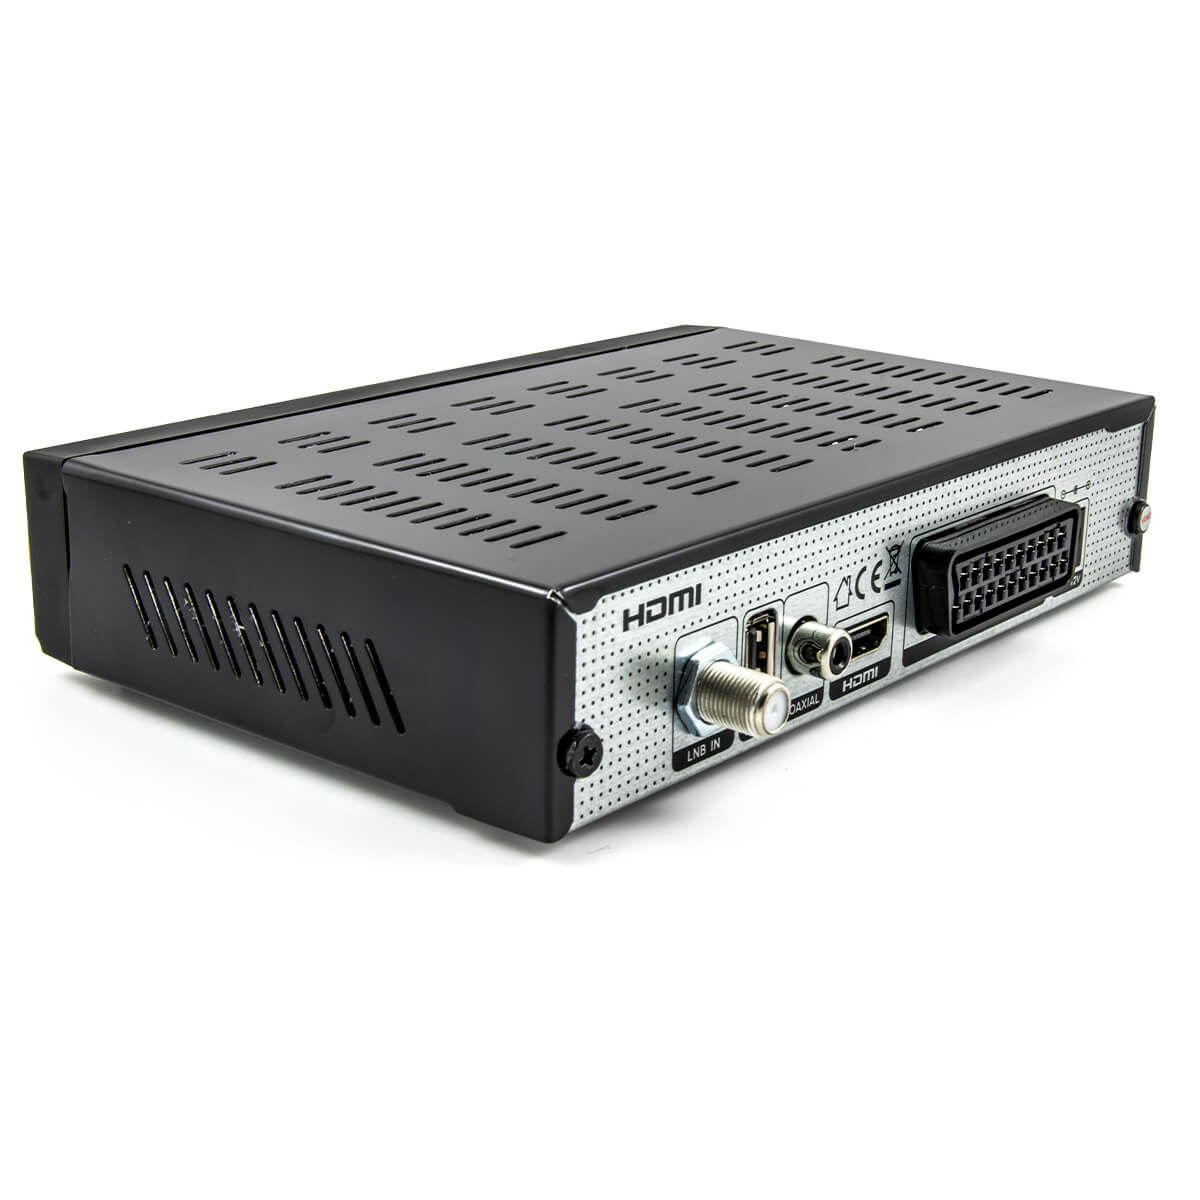 OPticum AX 300 Plus DVB-S2 SAT Receiver